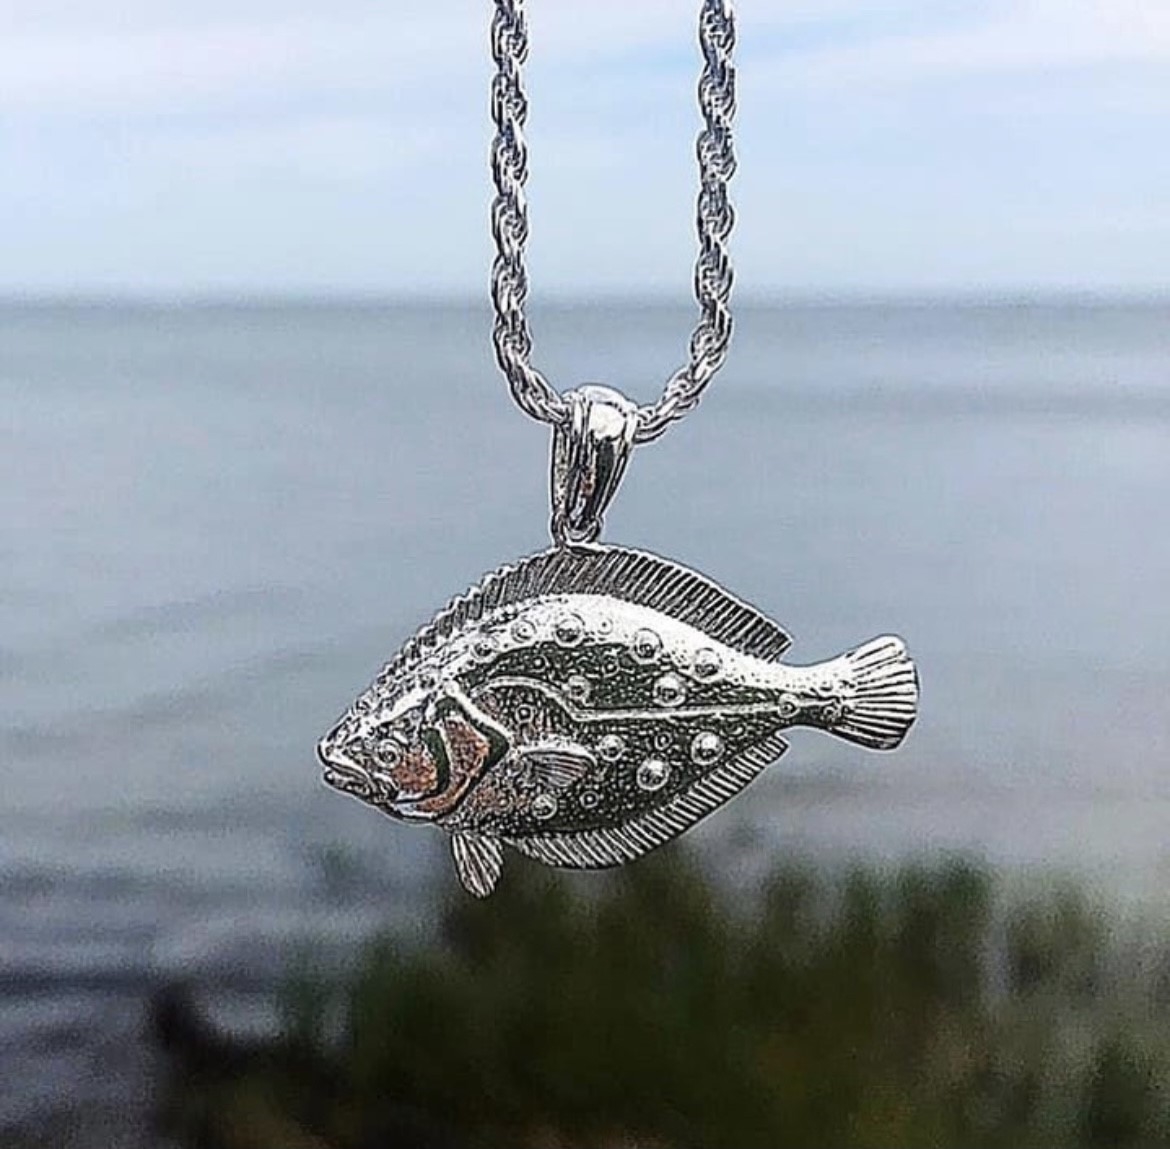 Flounder Pendants, Fish Pendants, Fishing Jewelry